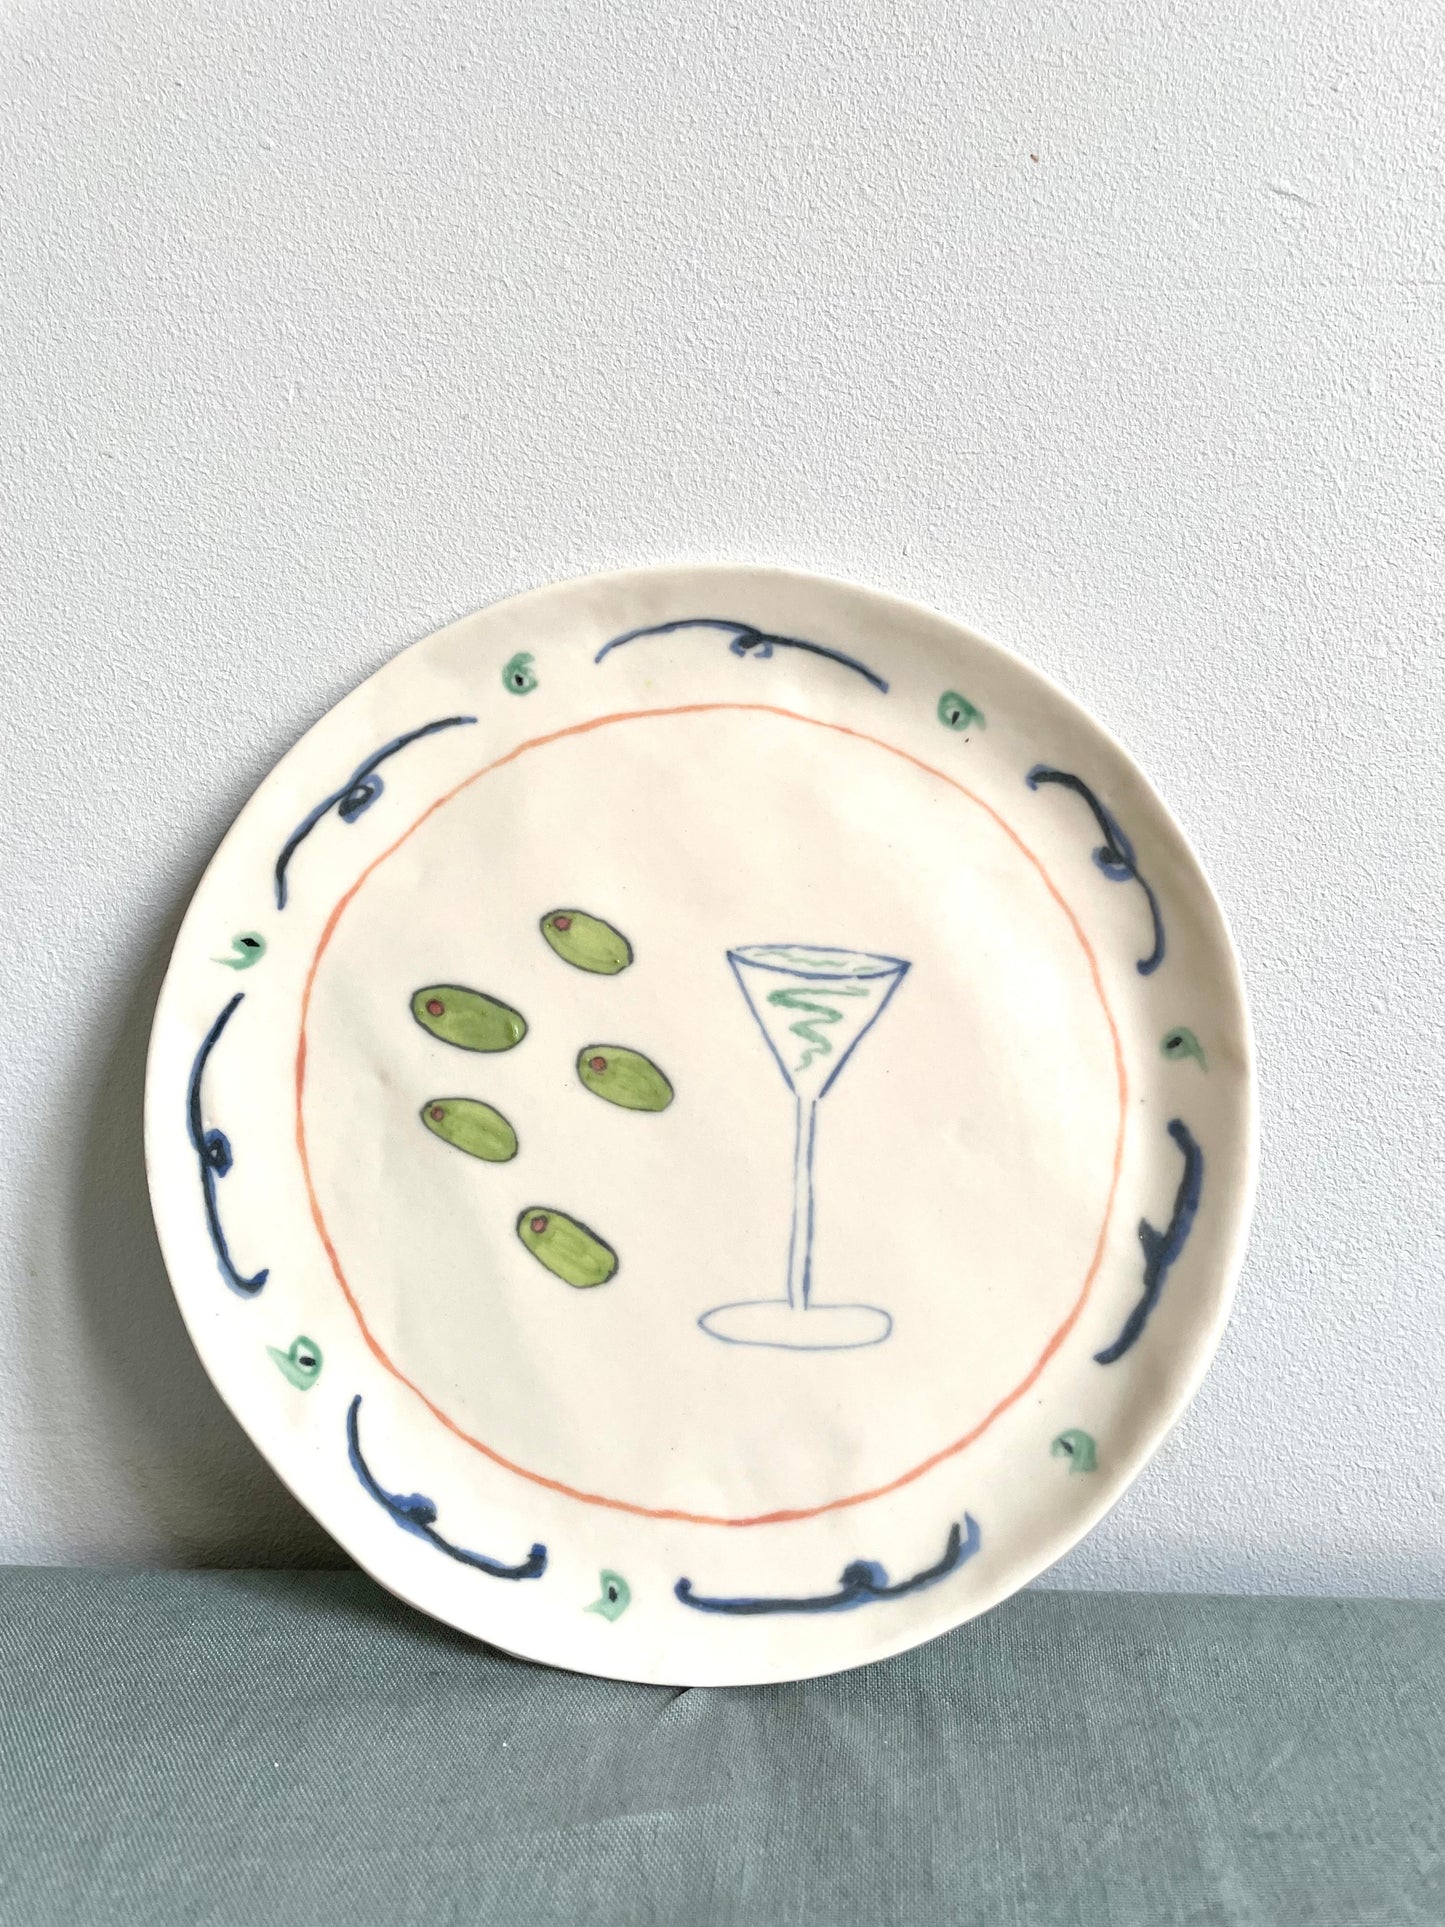 Martini plate